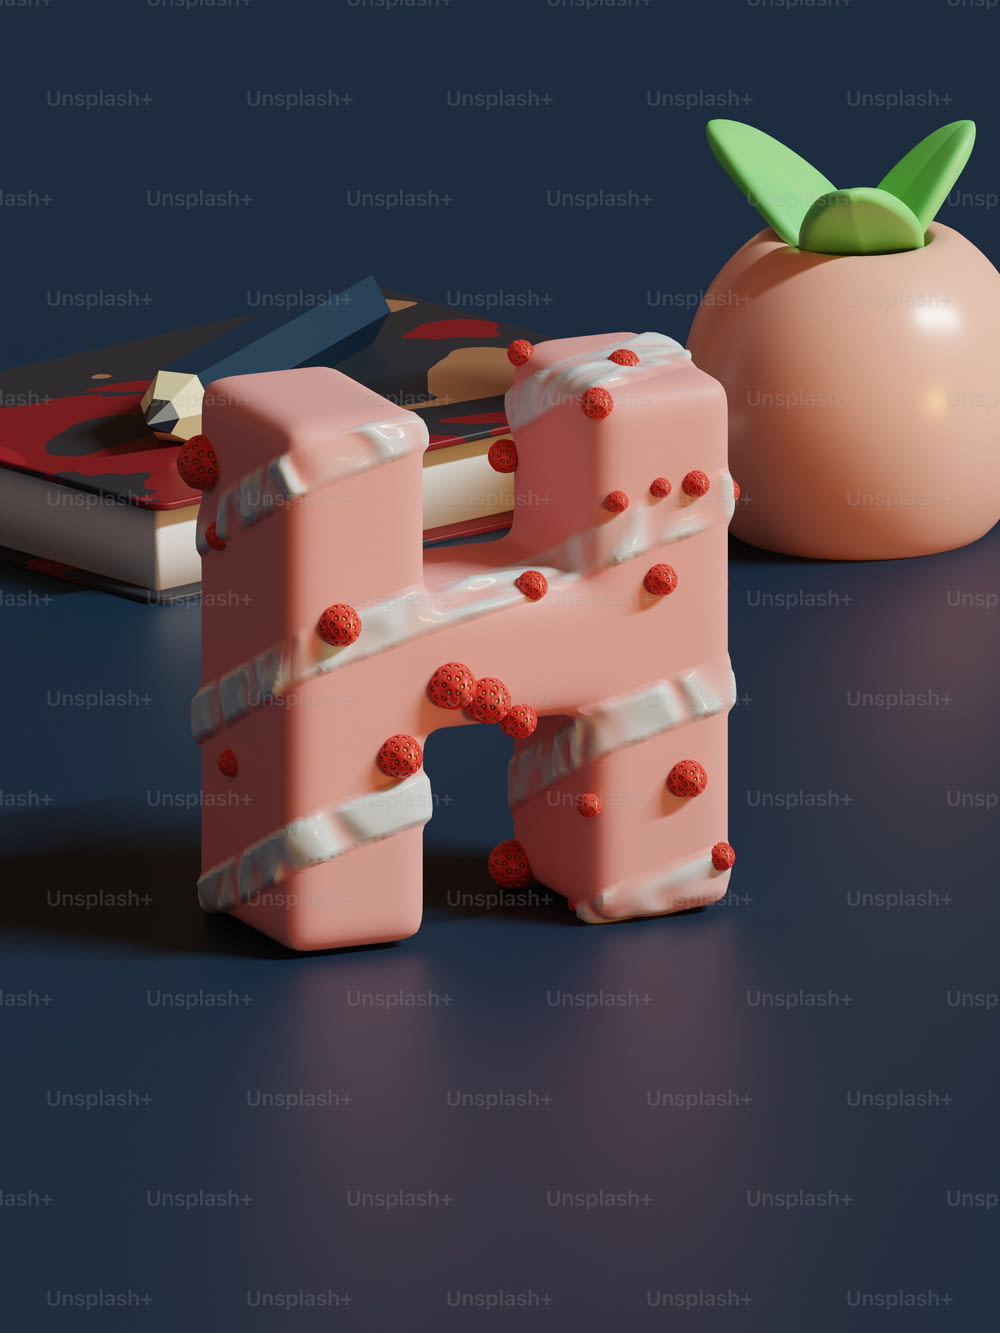 테이블에 토마토 옆에 앉아 있는 분홍색 물체